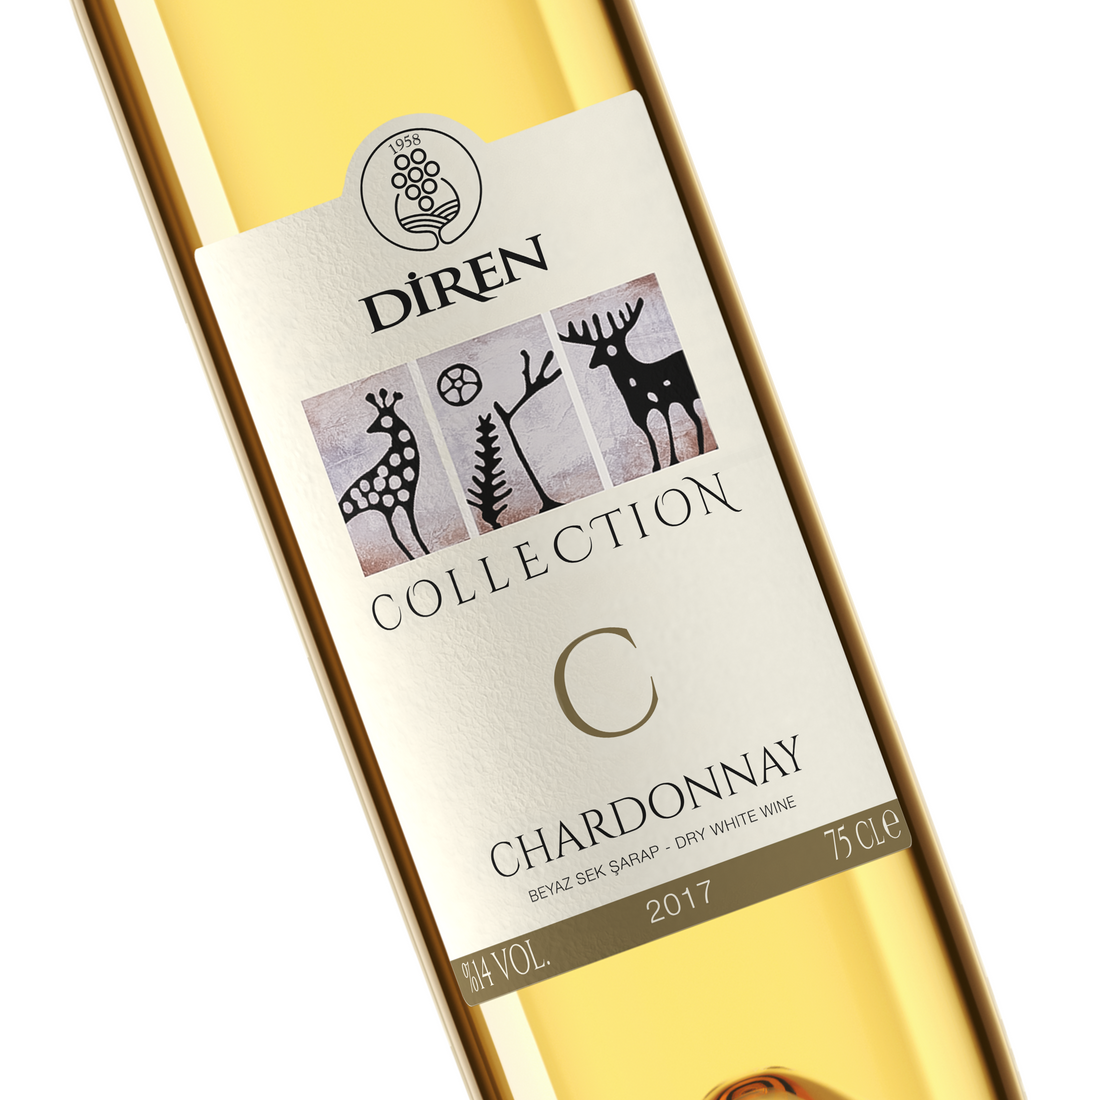 ディレン コレクション・シャルドネ 750ml 辛口 トルコ 白ワイン | Diren Collection Chardonnay Beyaz Sek Sarap | Dry White Wine